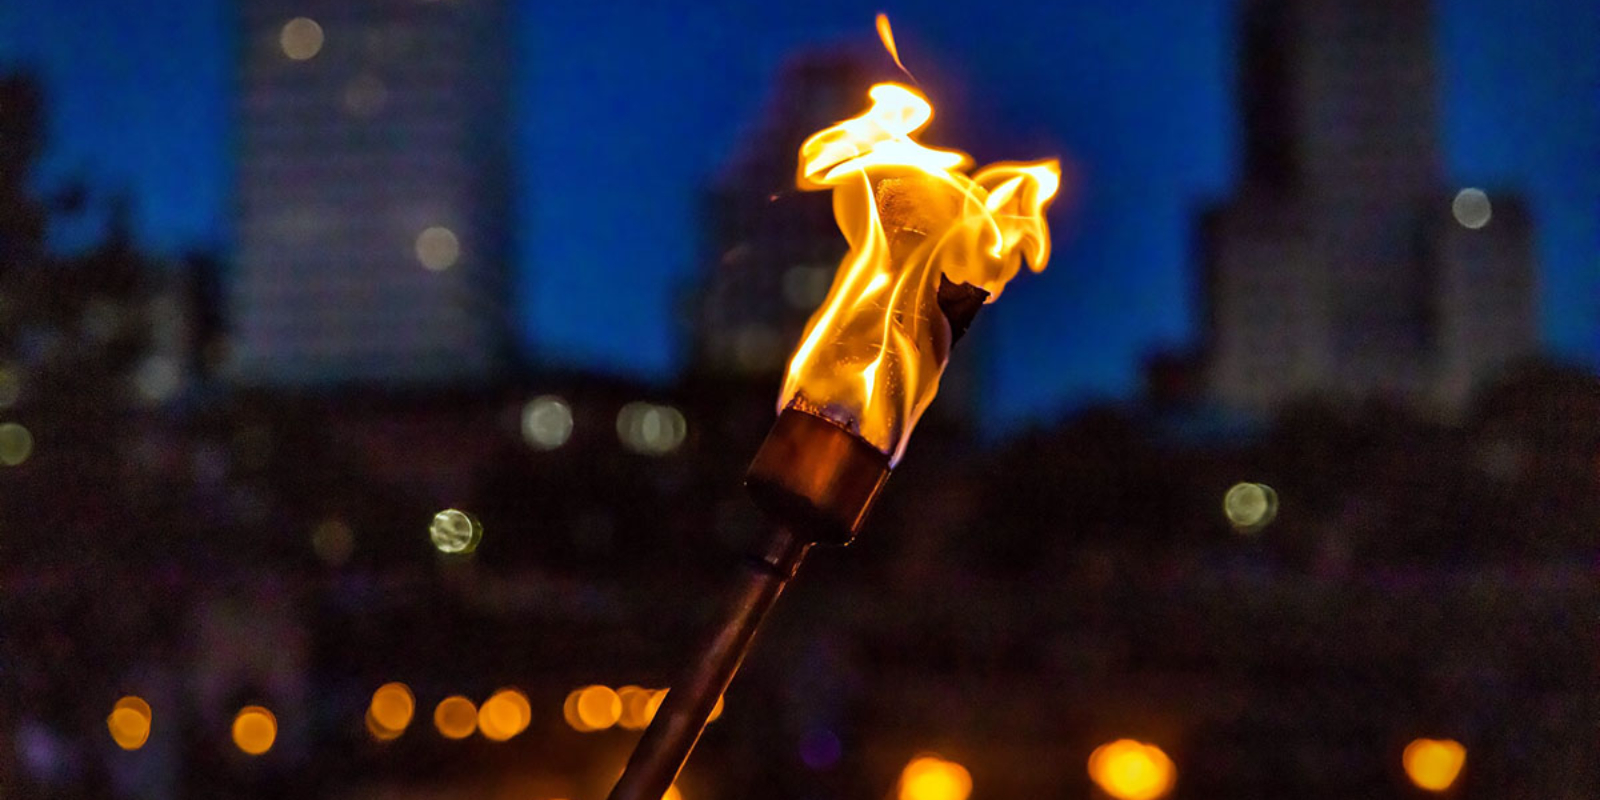 Torch light at WaterFire. Photograph by Jeff Meunier.